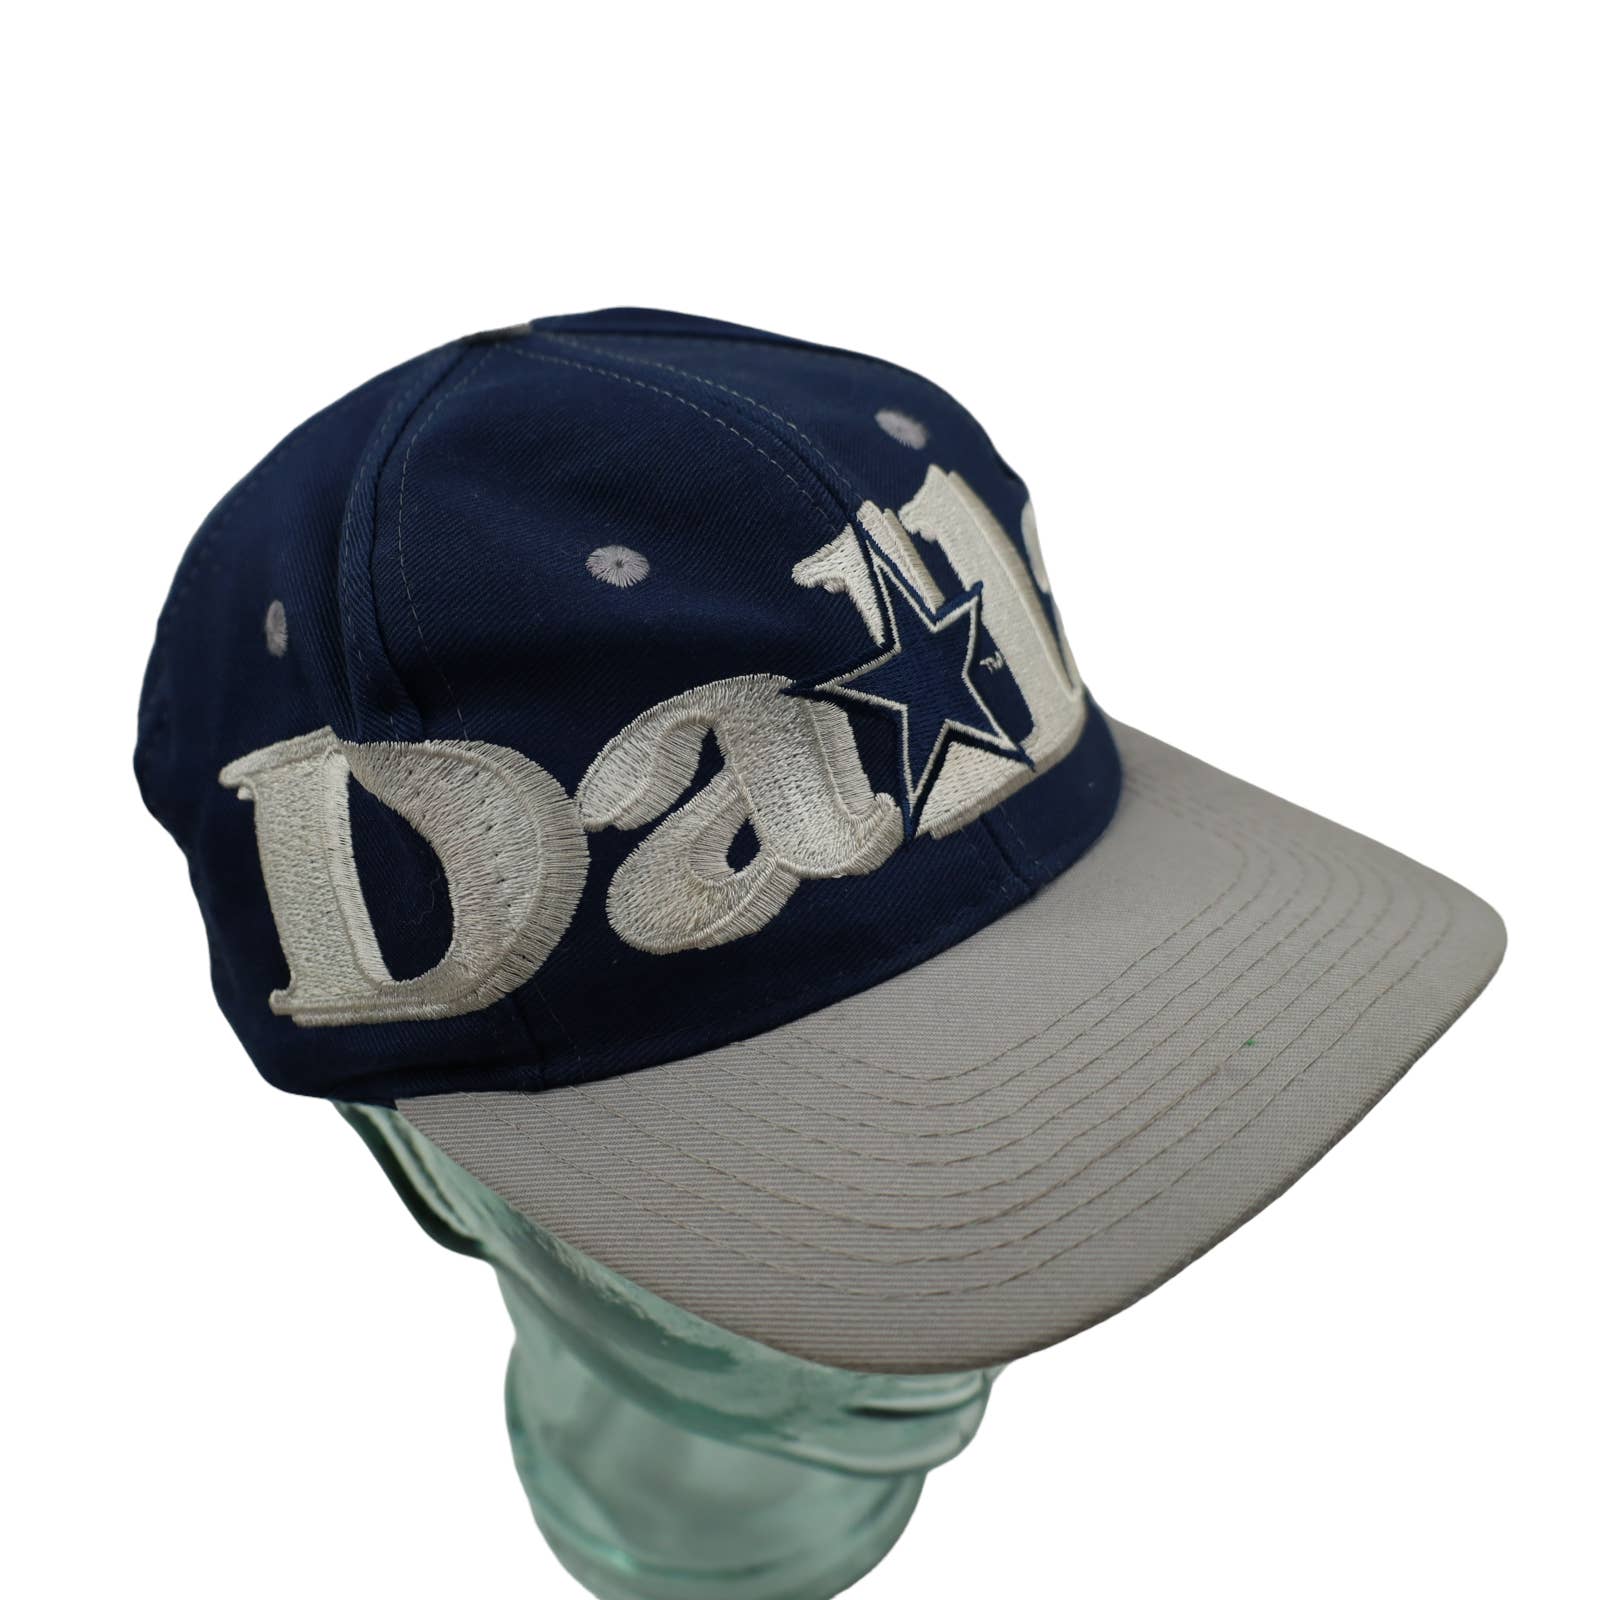 vintage dallas cowboys hat